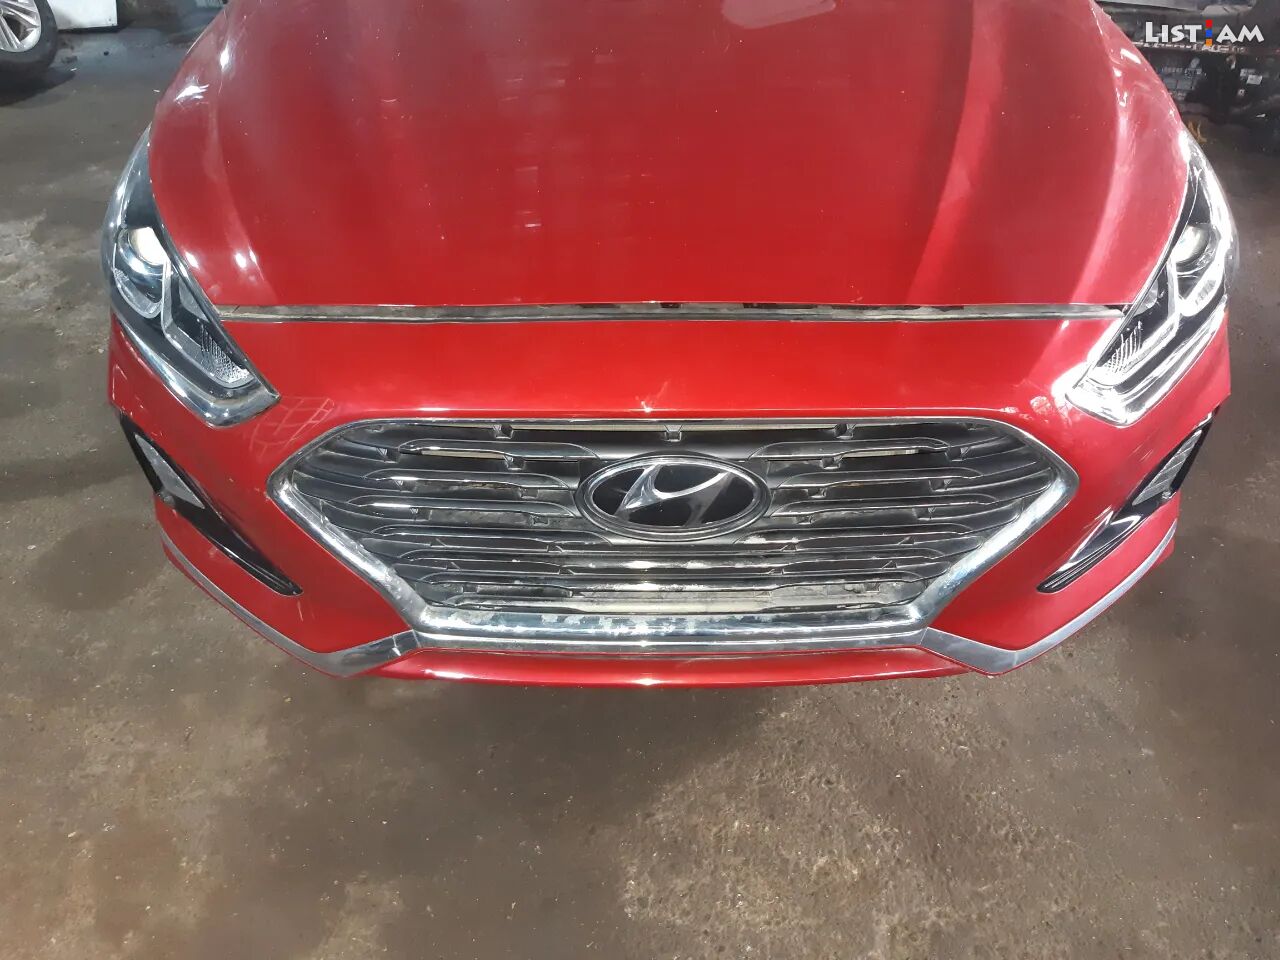 Hyundai Sonata, 2018